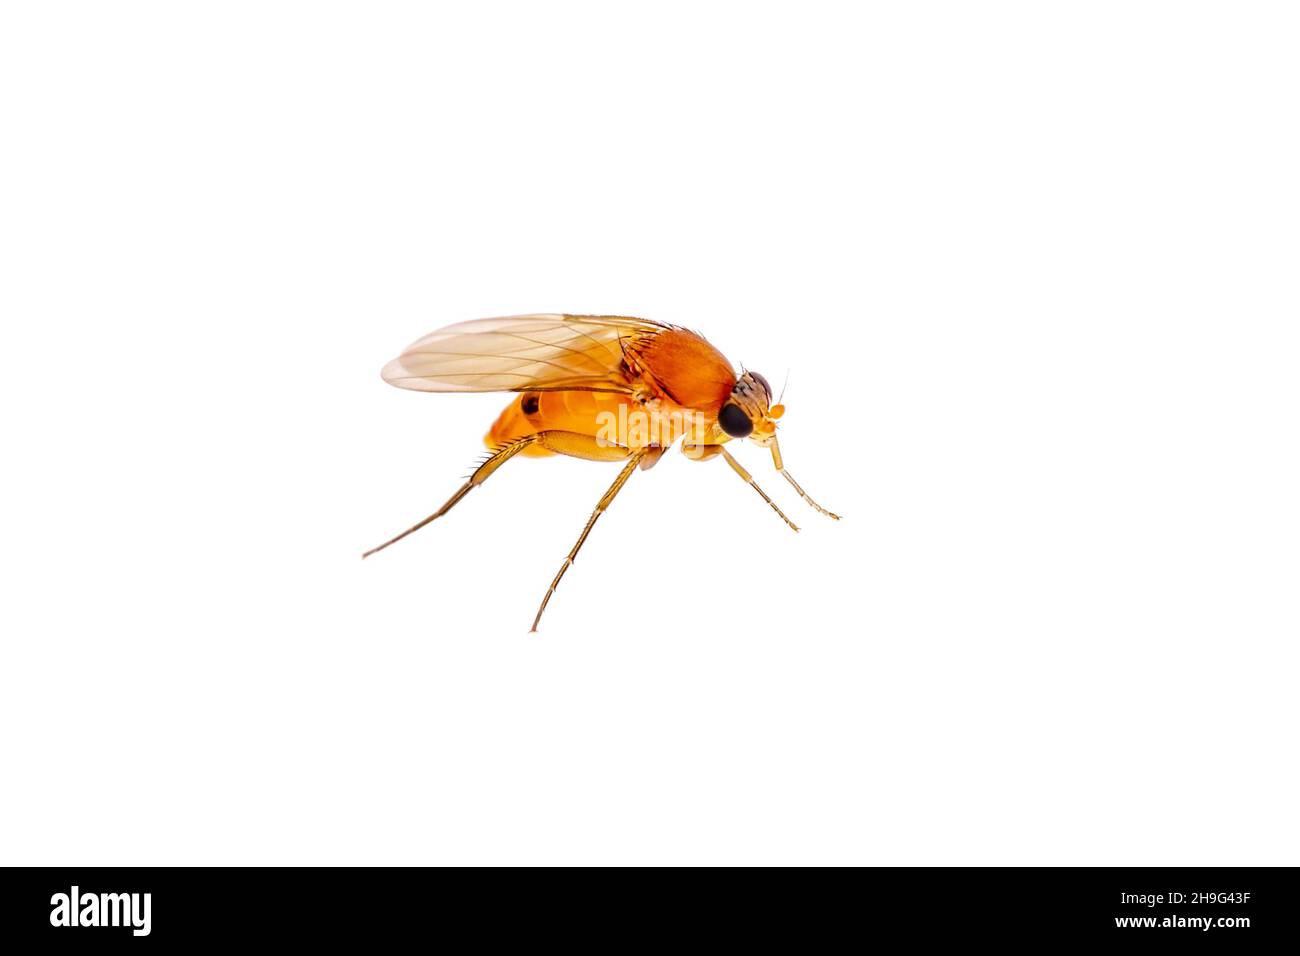 Espèce exotique de drosophila mouche de fruits Diptera parasite insecte sur fond blanc Banque D'Images